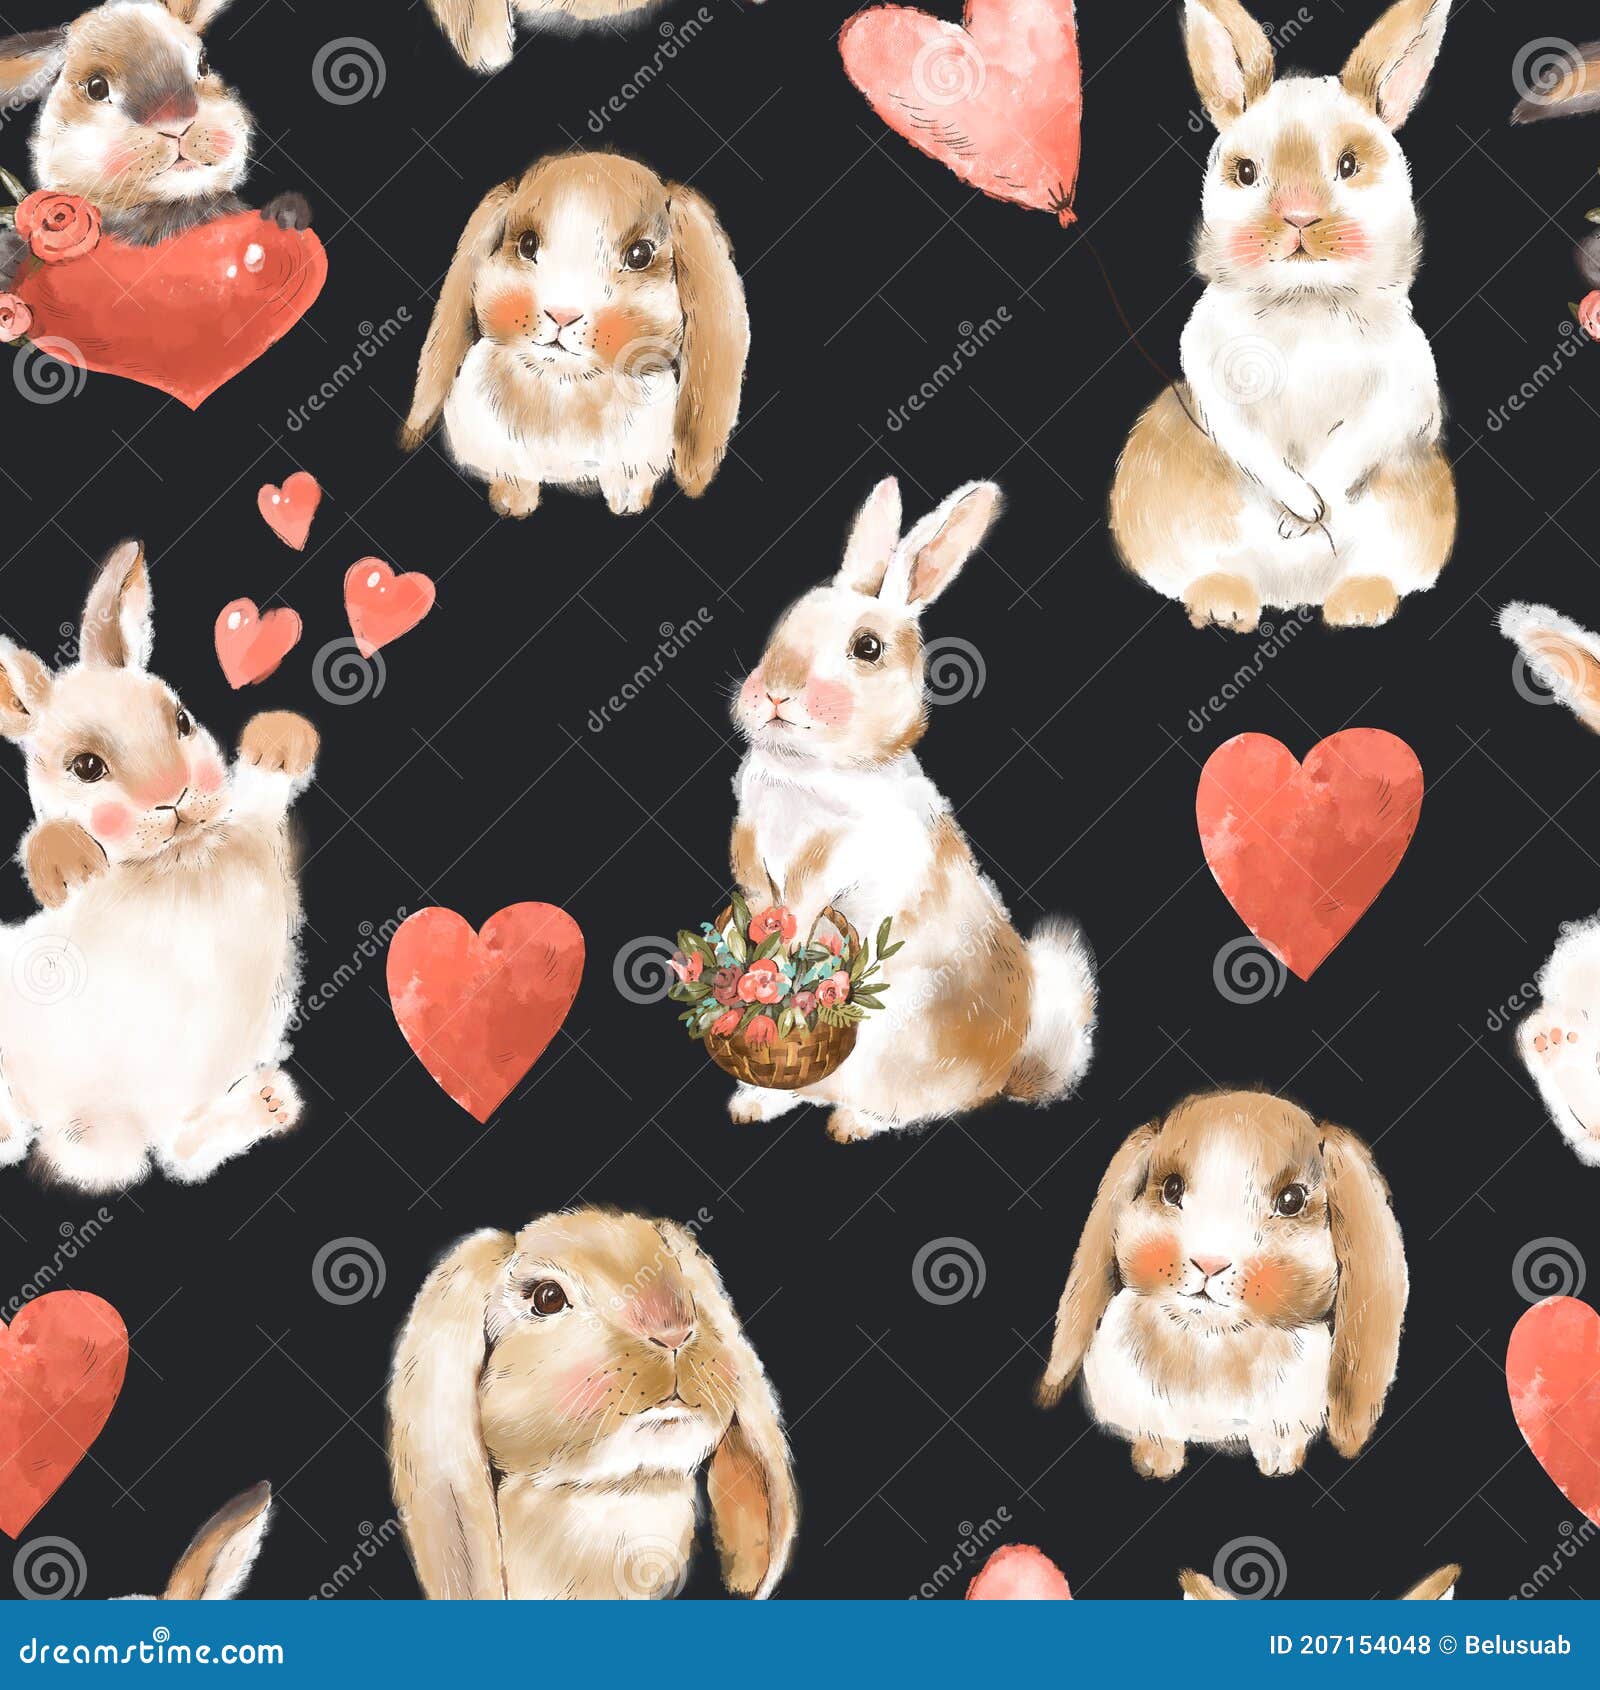 Top 60+ bunny wallpaper cute best - in.cdgdbentre